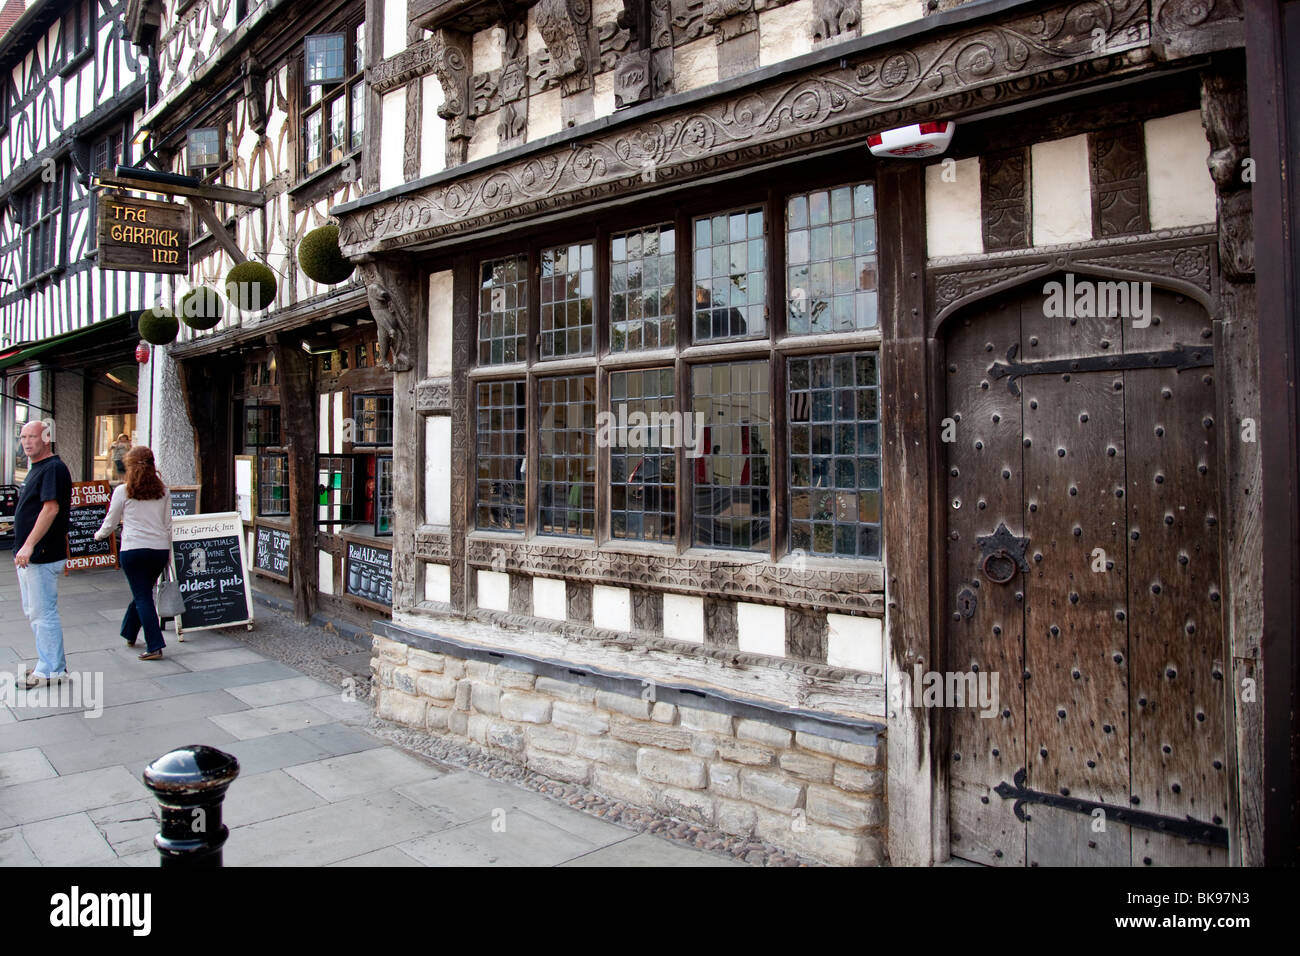 Il Garrick Inn un sedicesimo secolo pub di Stratford upon Avon Foto Stock